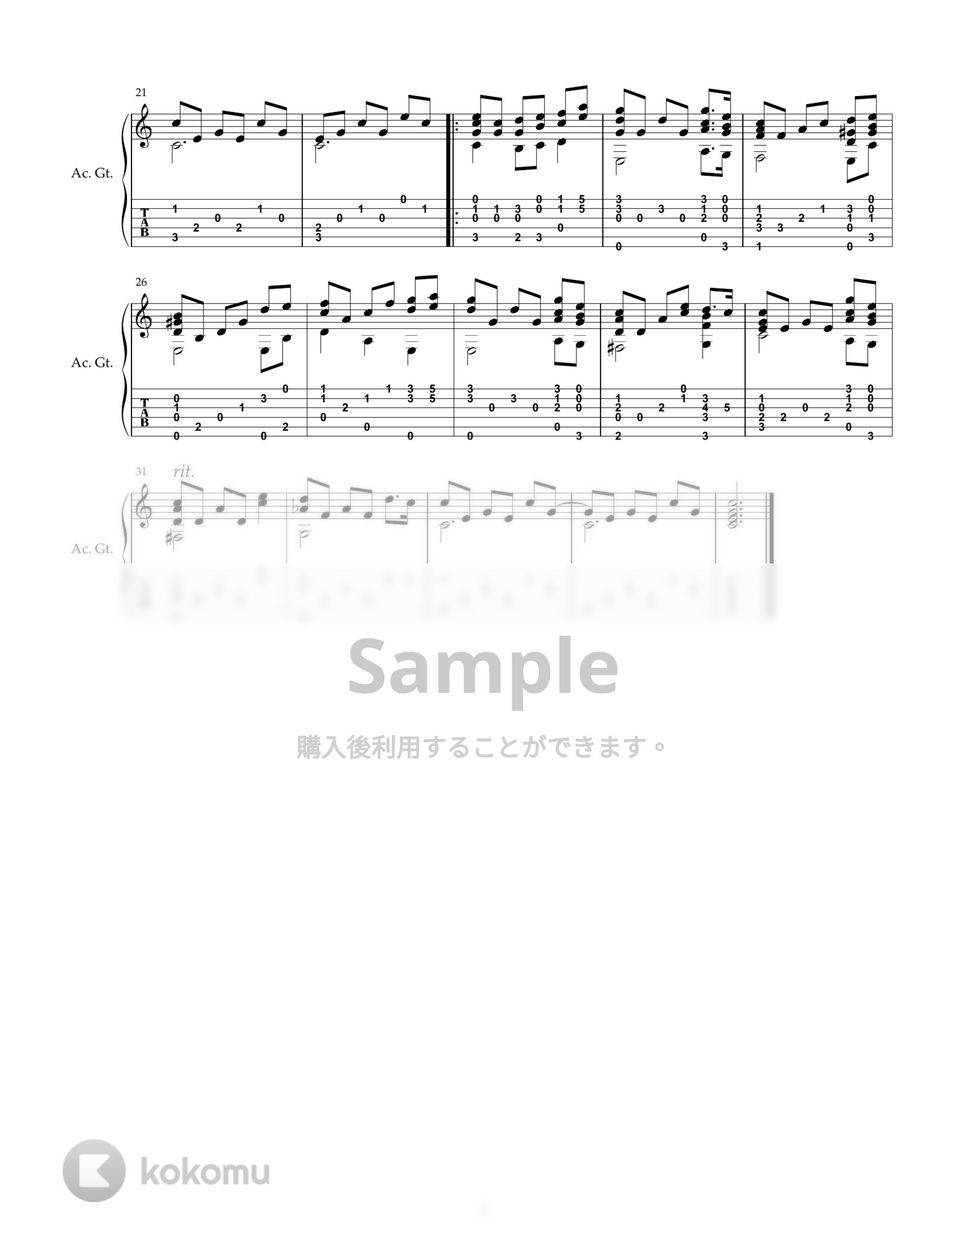 玉置浩二 - 愛を伝えて (ソロギター) by DegicoDegio